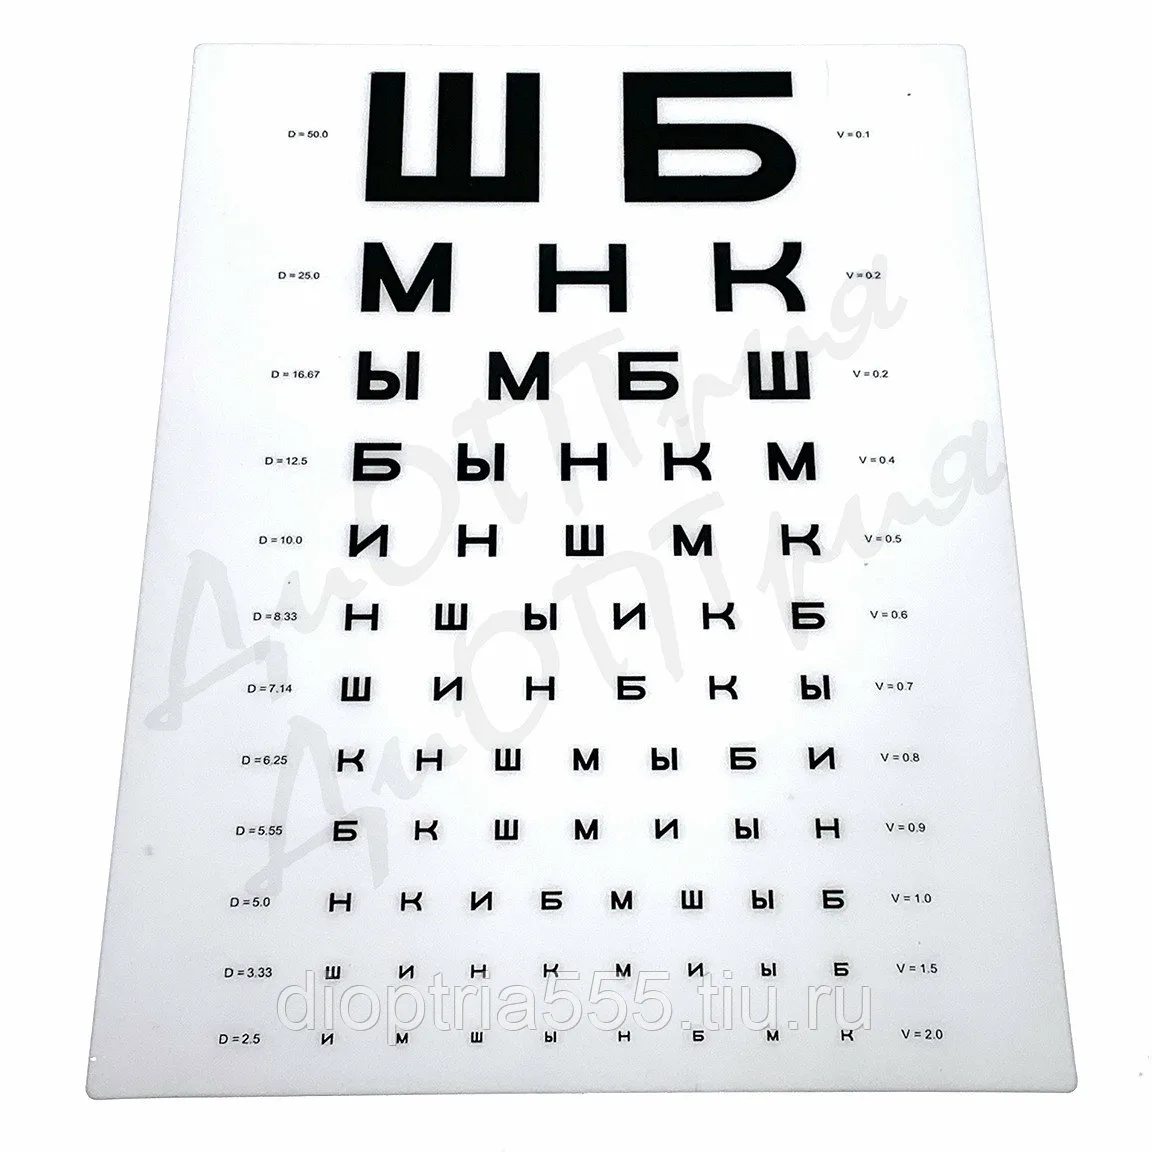 Таблица для проверки зрения у окулиста смотреть в полном размере фото